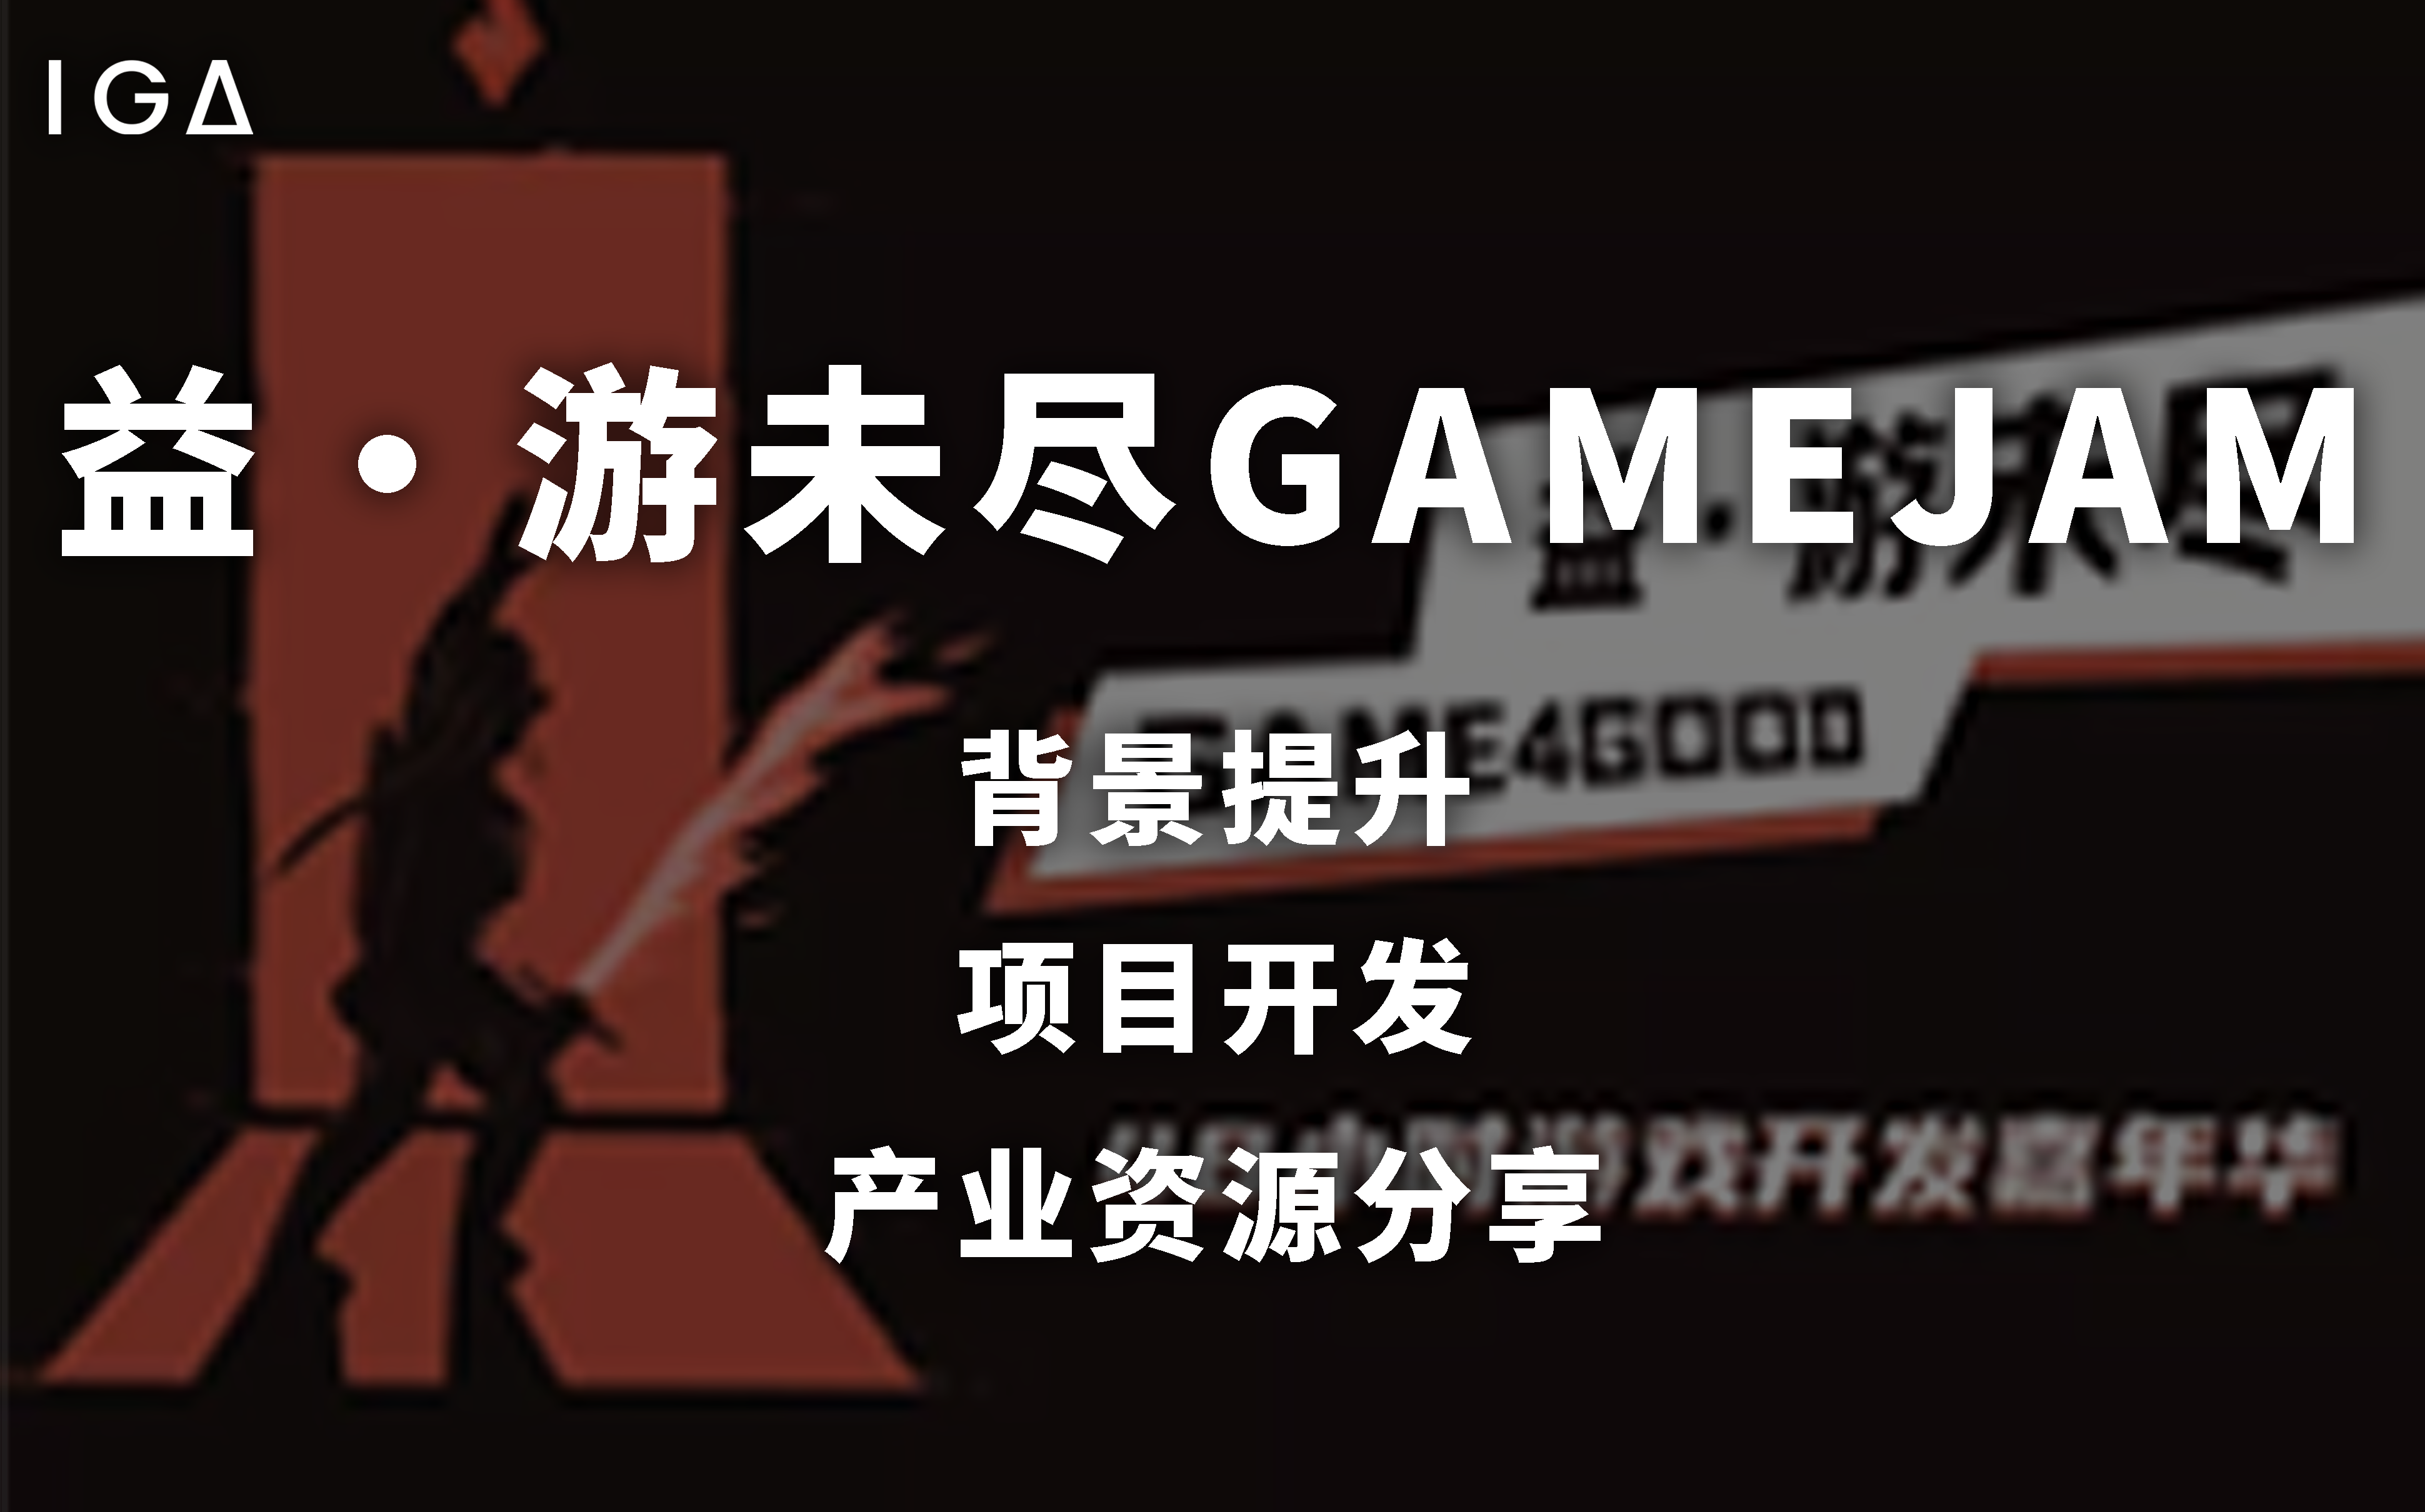 上海IGA传火游戏设计作品集项目